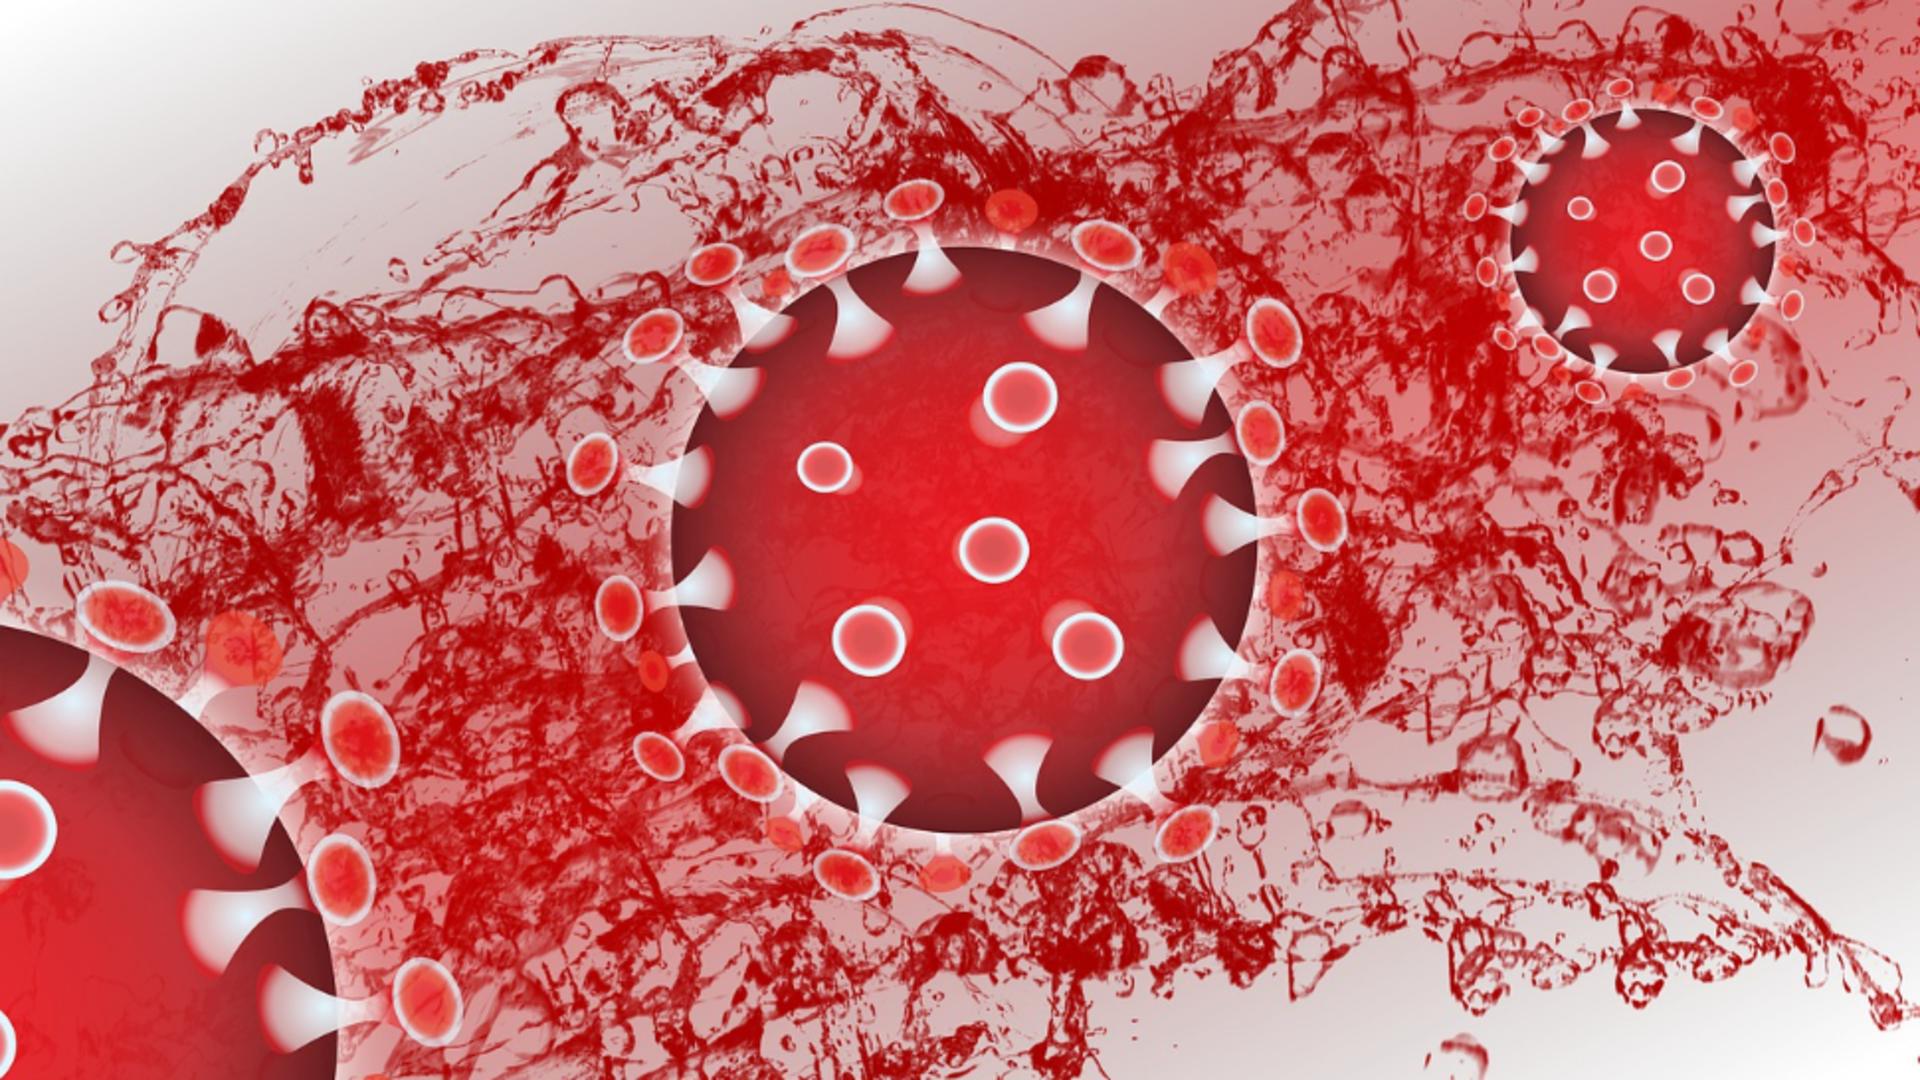 S-a descoperit CUM apar cheagurile de sânge la vaccinarea COVID-19 cu AstraZeneca și Johnson&Johnson - Care este SOLUȚIA